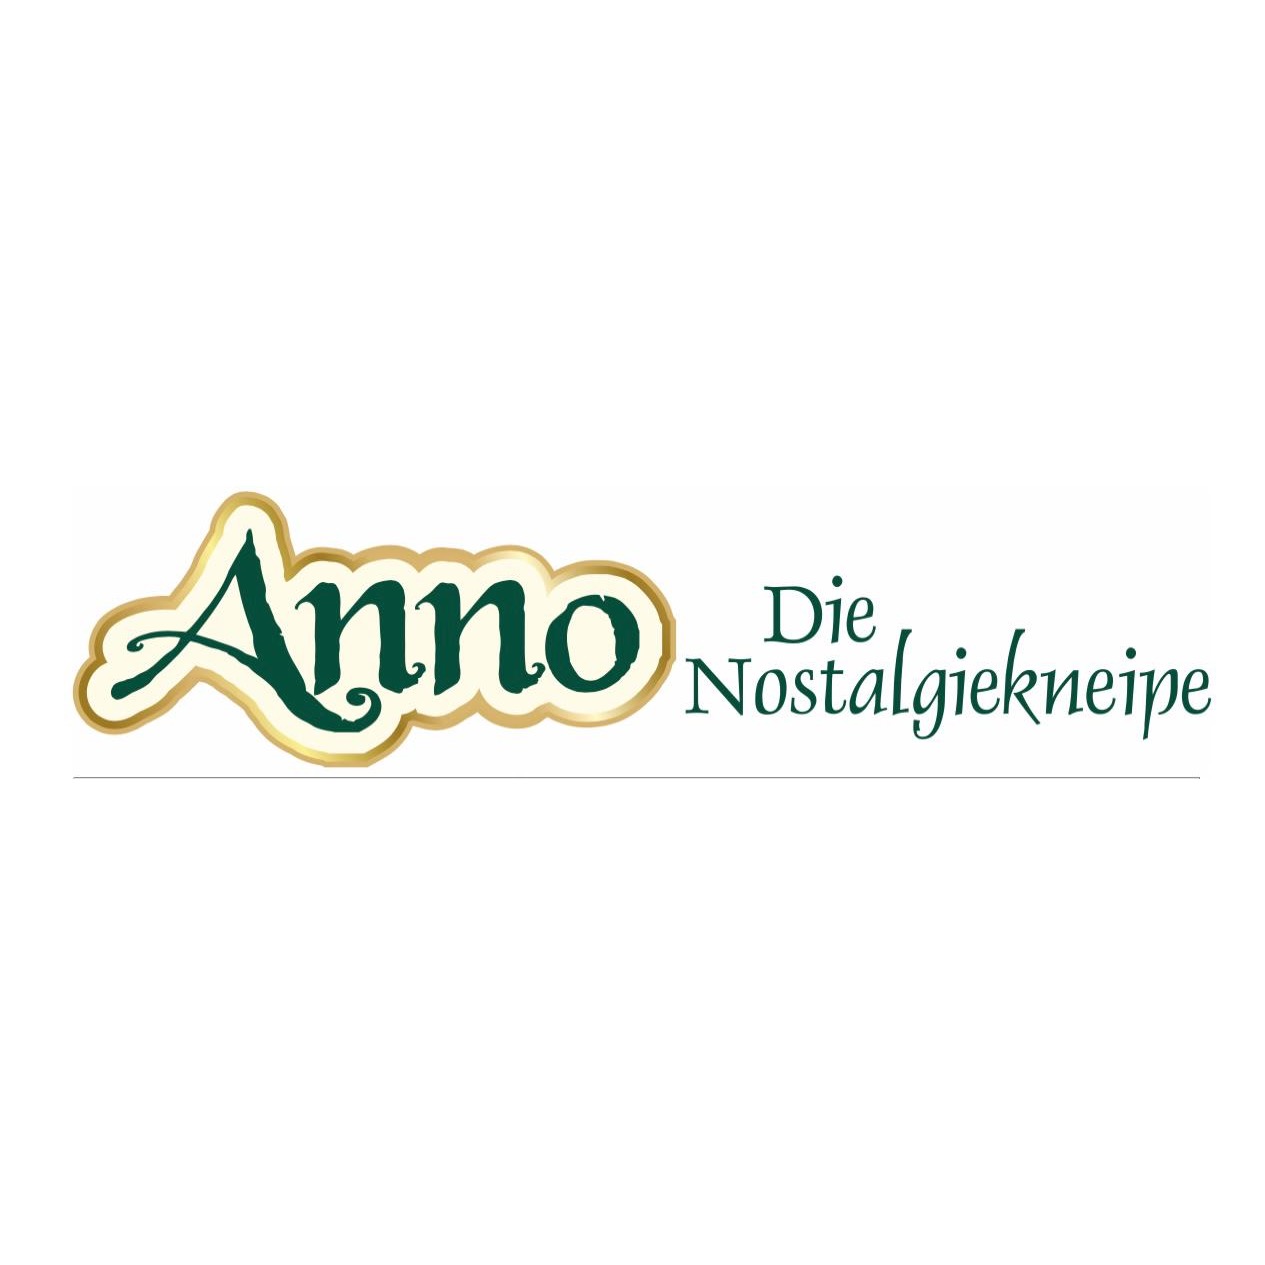 Anno-Die Nostalgiekneipe in Wuppertal - Logo